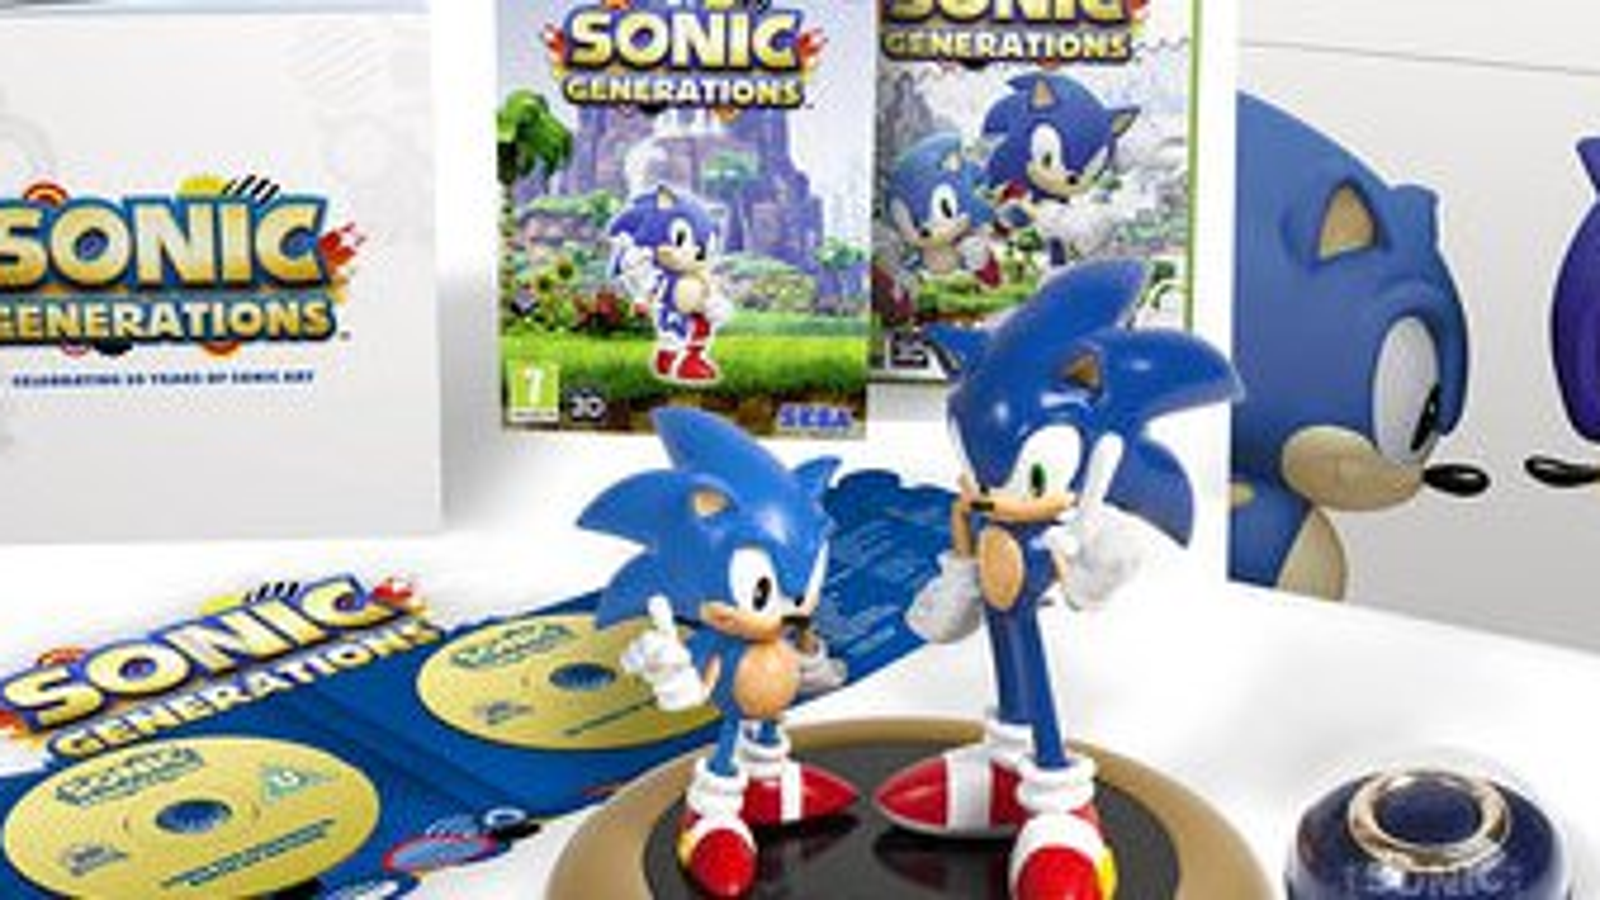 Ps3 Sonic Generations. Sonic Generations Collector's Edition. Sonic Generations ps3 коллекционное издание купить в Москве. Купить sonic generations